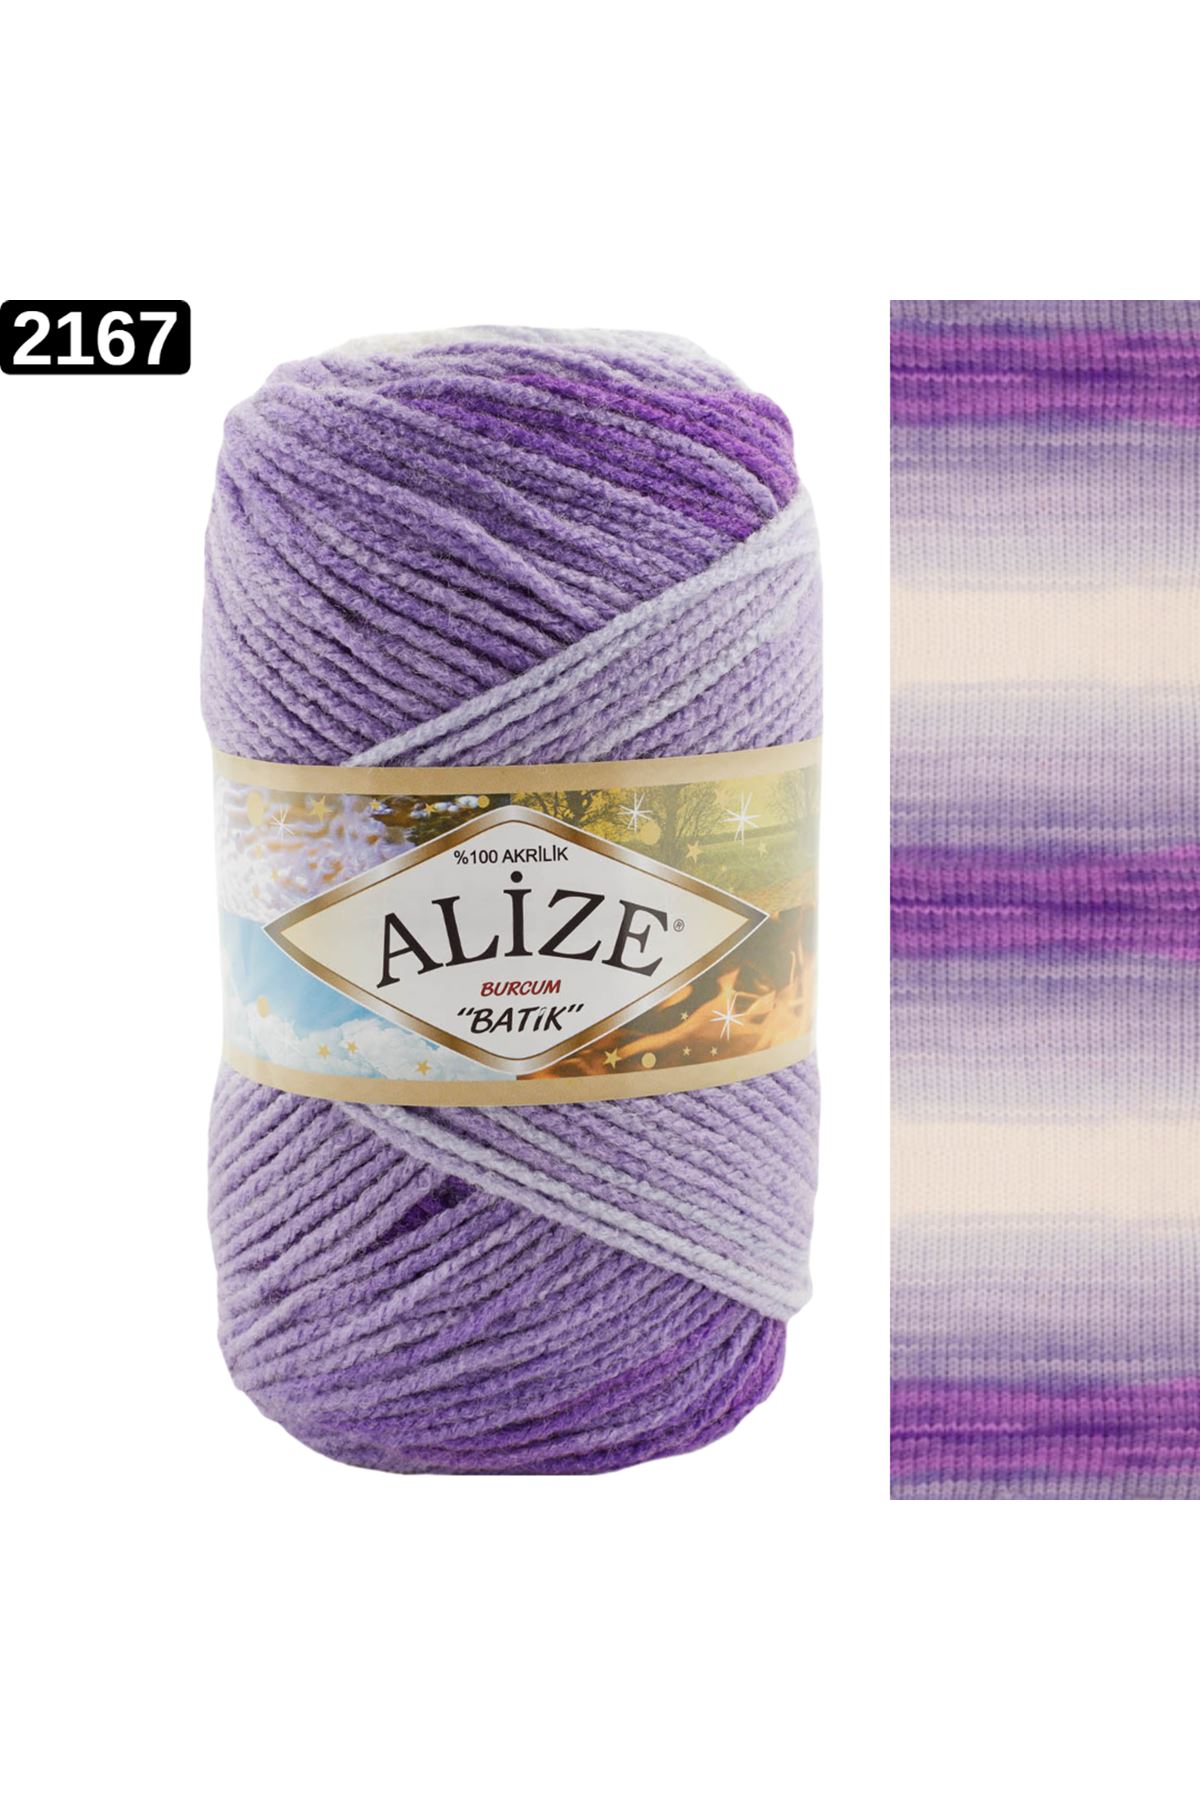 Alize Burcum Batik Renk No: 2167